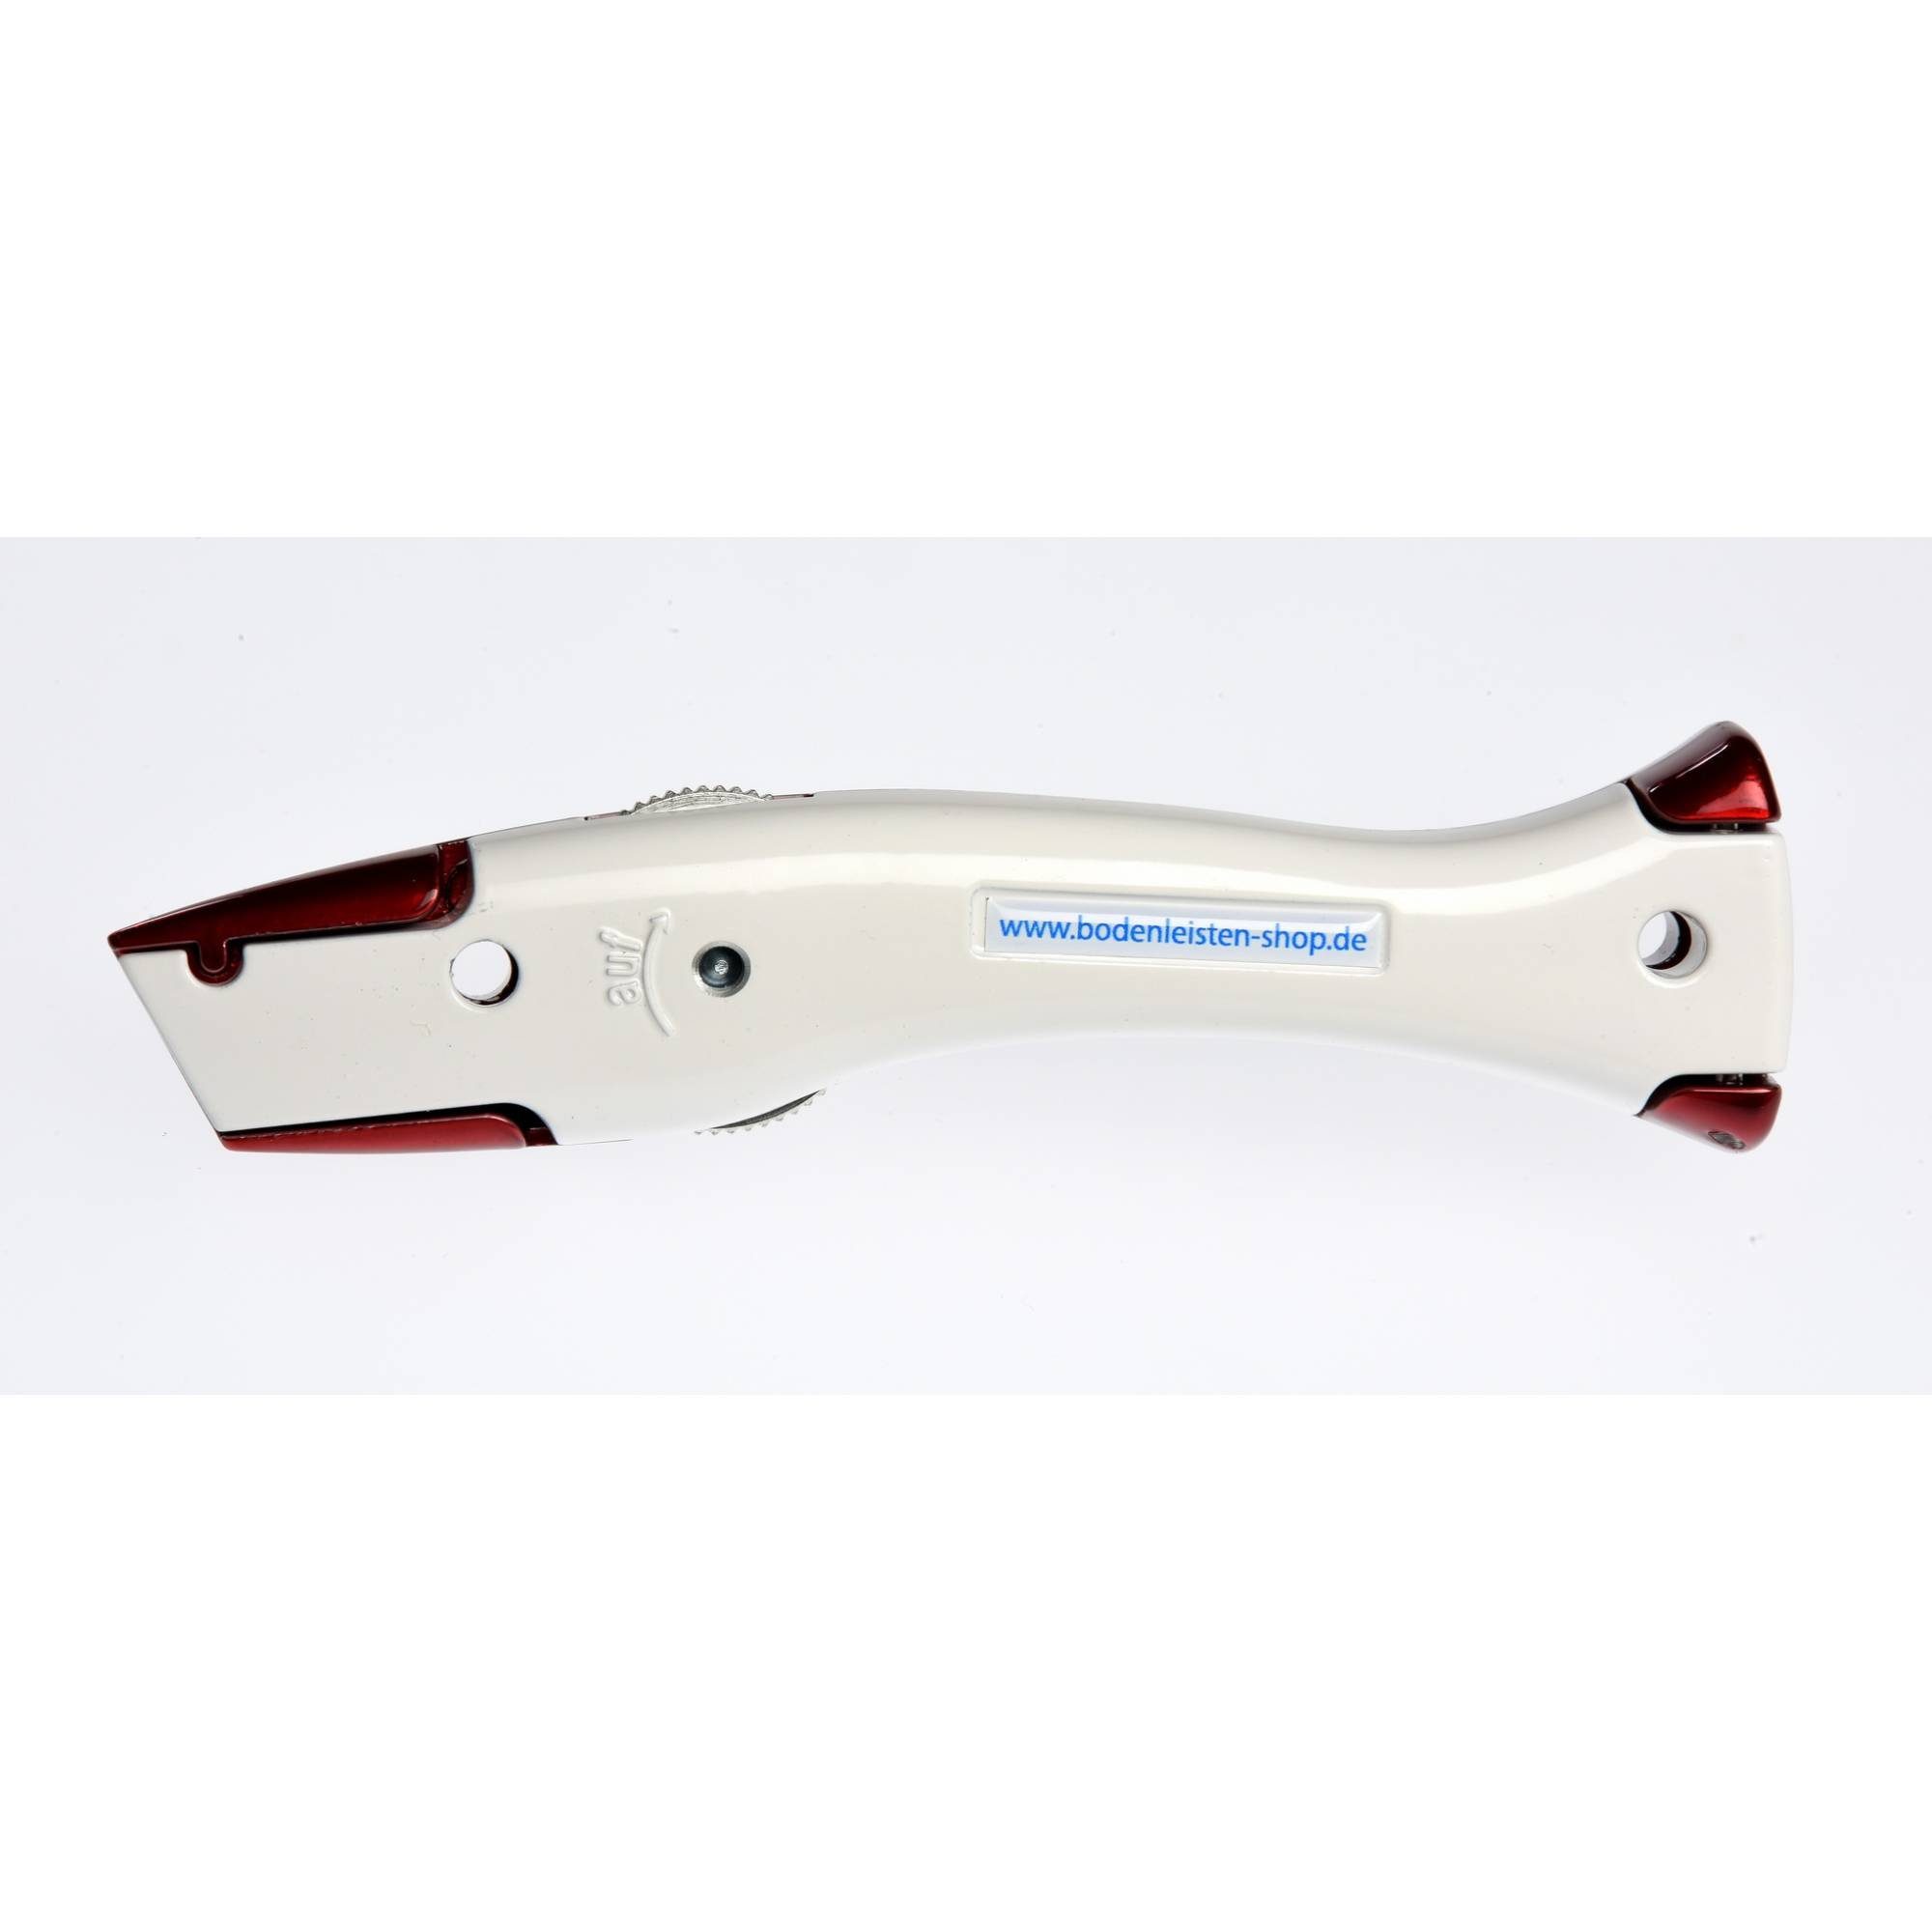 Universalmesser Delphin®-03 Cutter Cuttermesser Candy Style-Edition Weiss Delphin - Rot